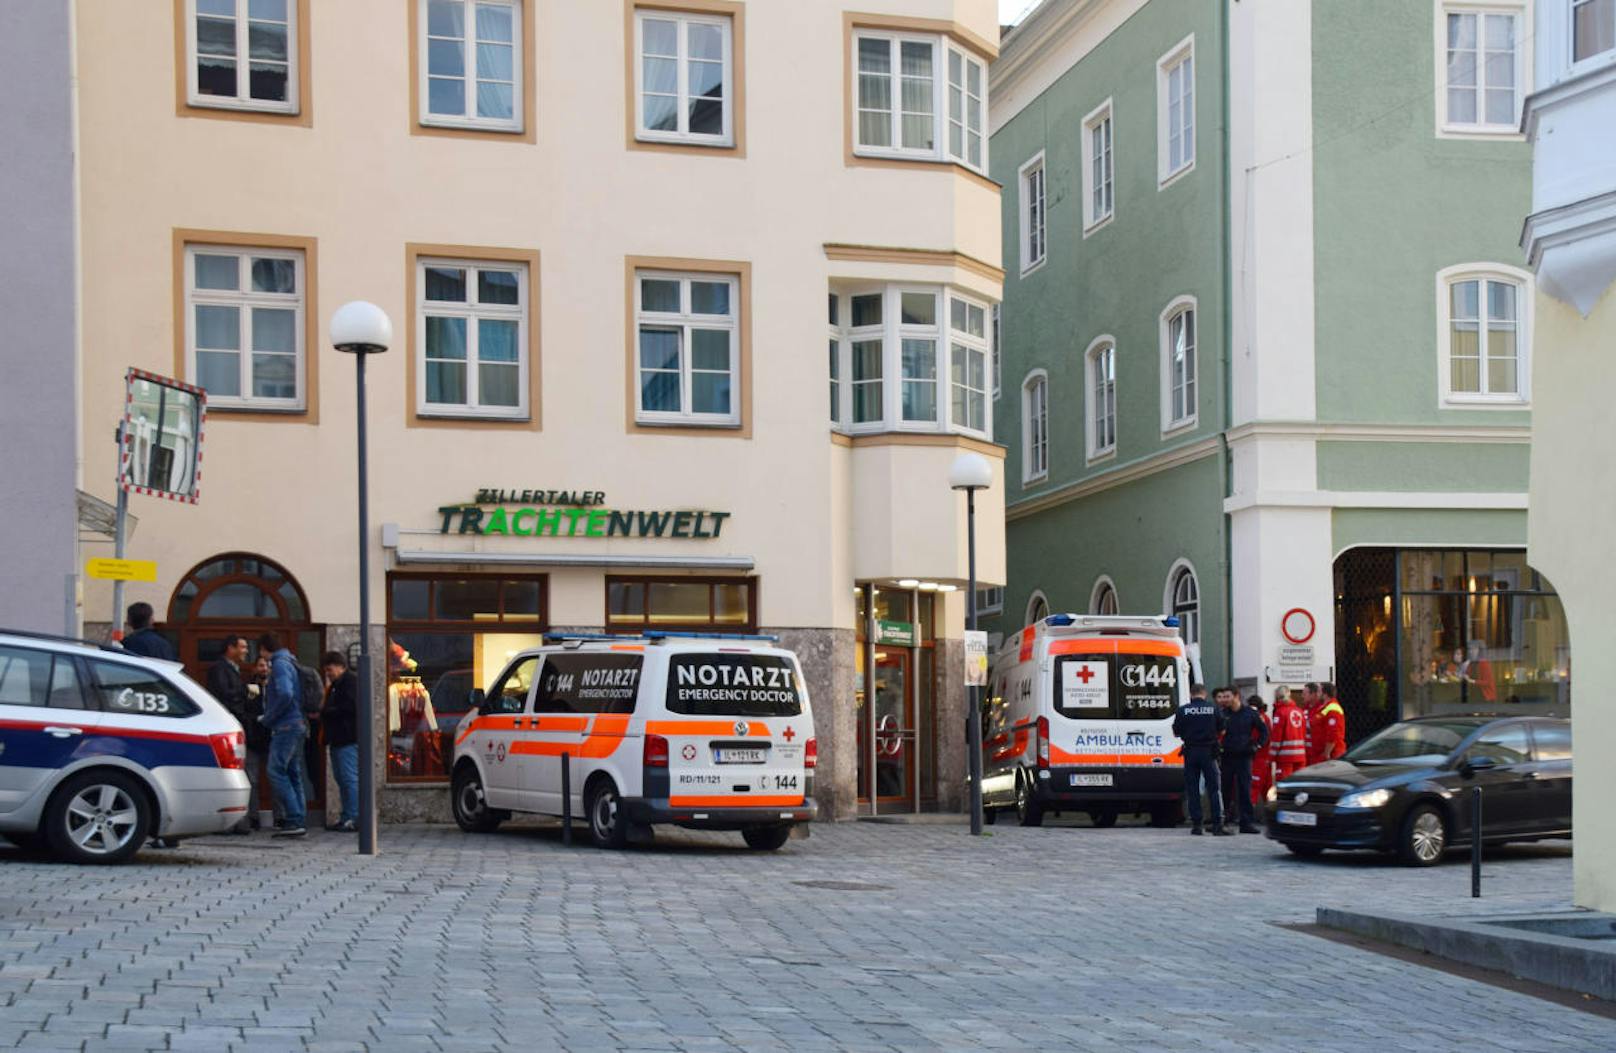 Die Polizei erhielt gegen 18.15 Uhr die Benachrichtigung, dass sich am Bahnhof in Kufstein ein verletzter Mann aufhalten soll. Die Beamten fuhren sofort zu der Adresse und suchten den Verletzten.